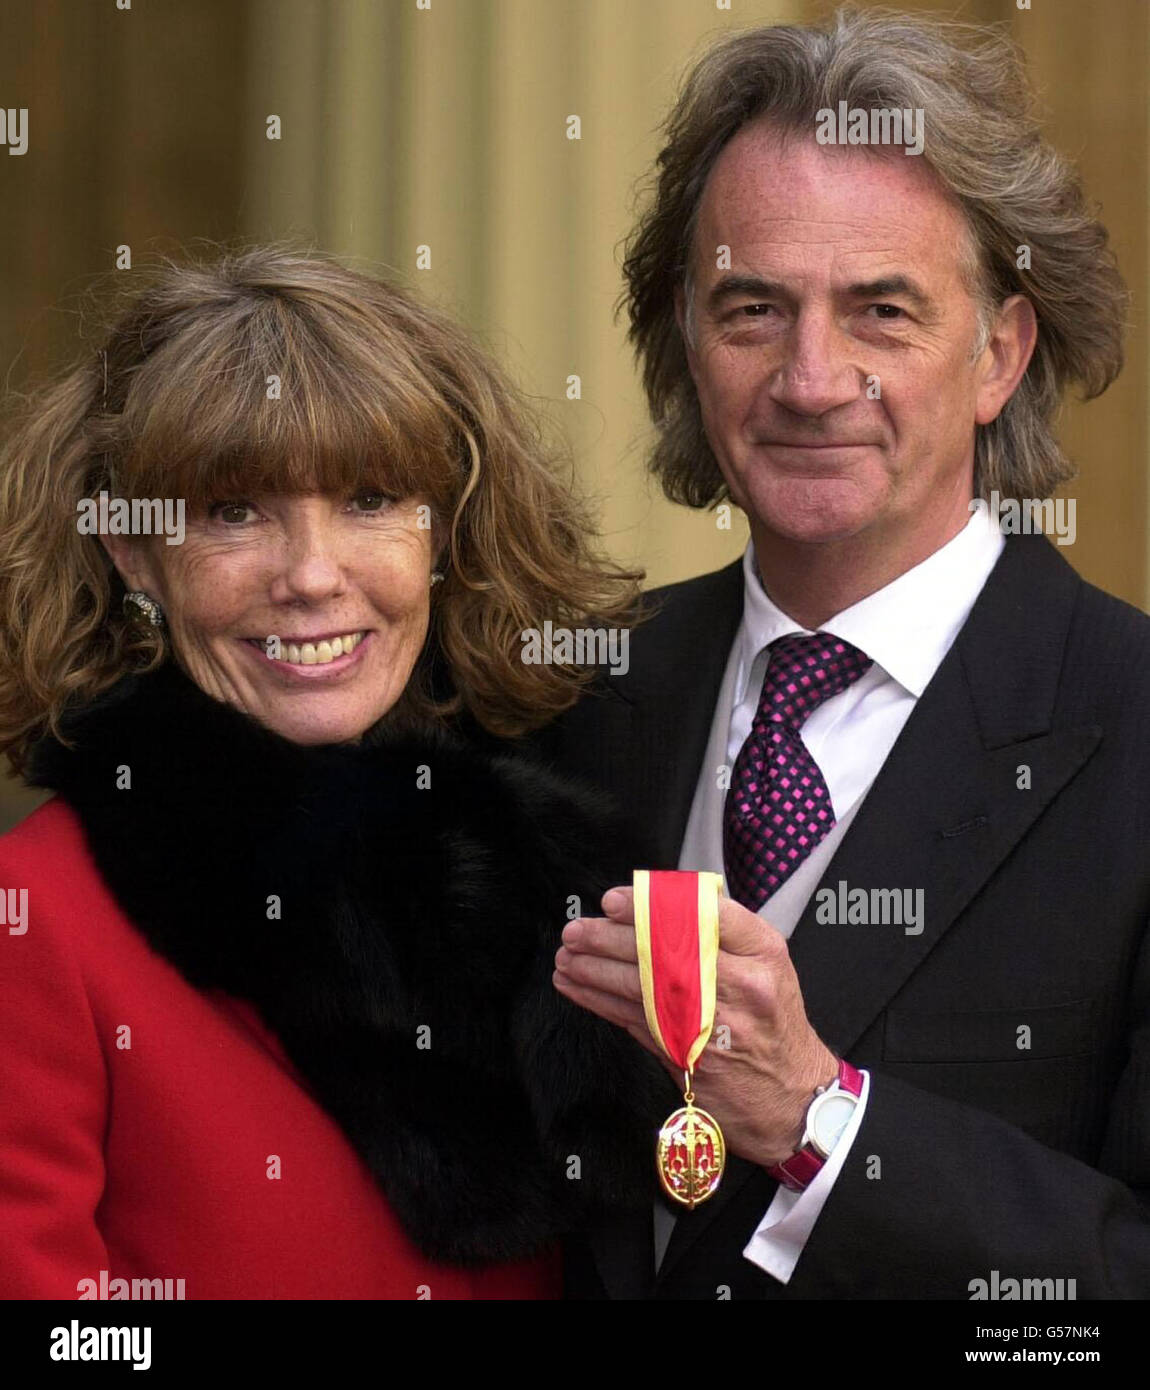 Der Modedesigner Sir Paul Smith und seine Frau Pauline, die im Buckingham  Palace mit der Ehrenritterschaft (Knights Batchelor) ausgezeichnet wurde  Stockfotografie - Alamy